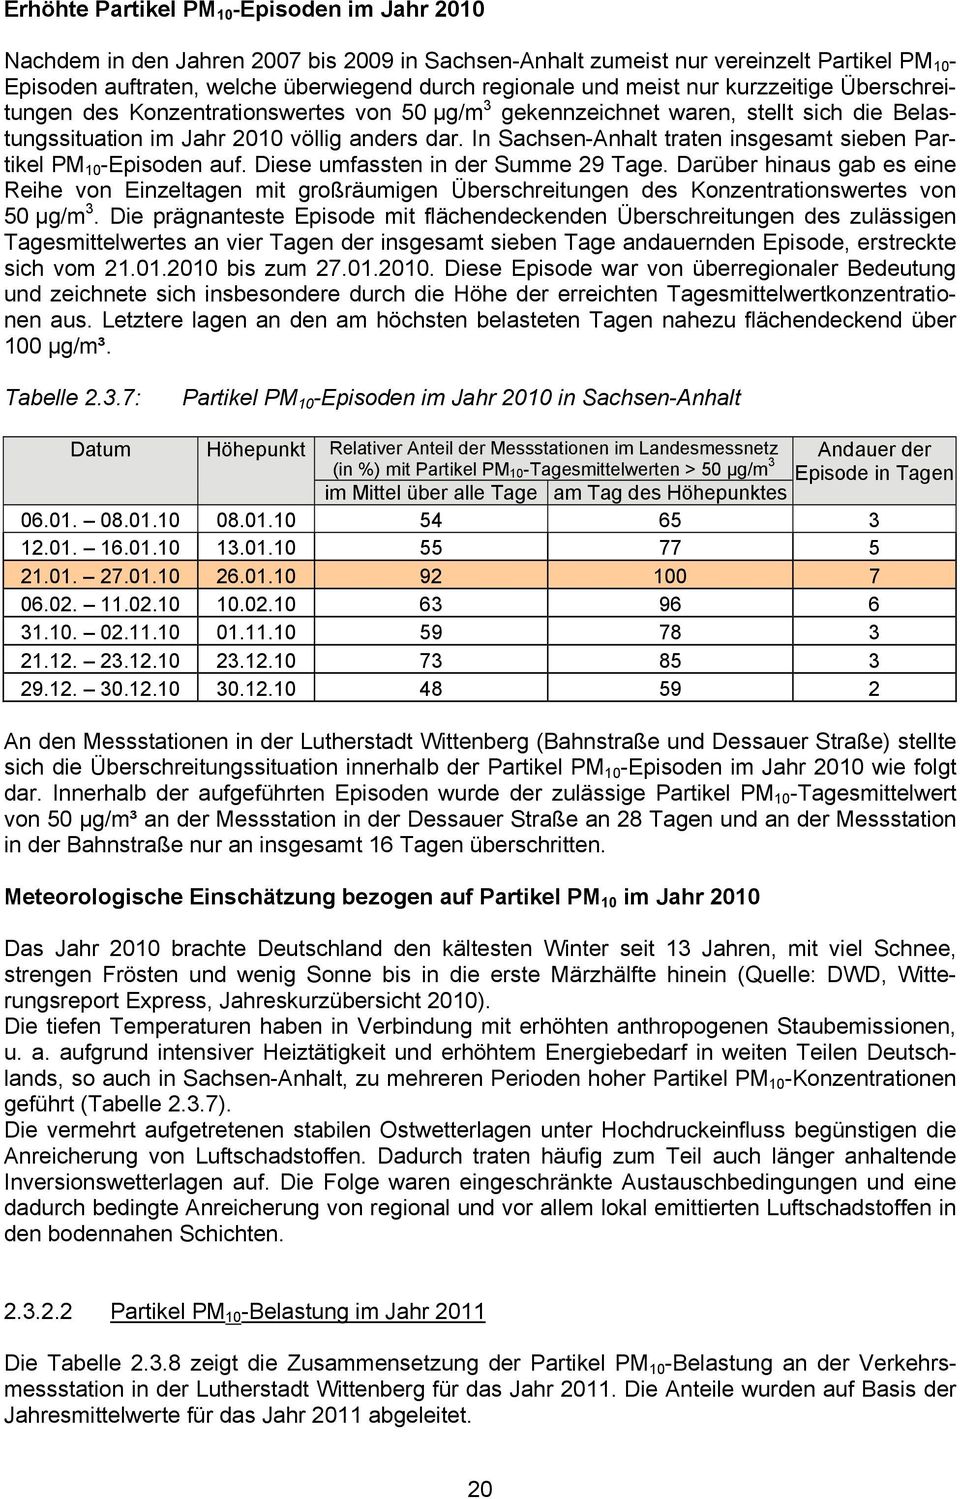 In Sachsen-Anhalt traten insgesamt sieben Partikel PM 10 -Episoden auf. Diese umfassten in der Summe 29 Tage.